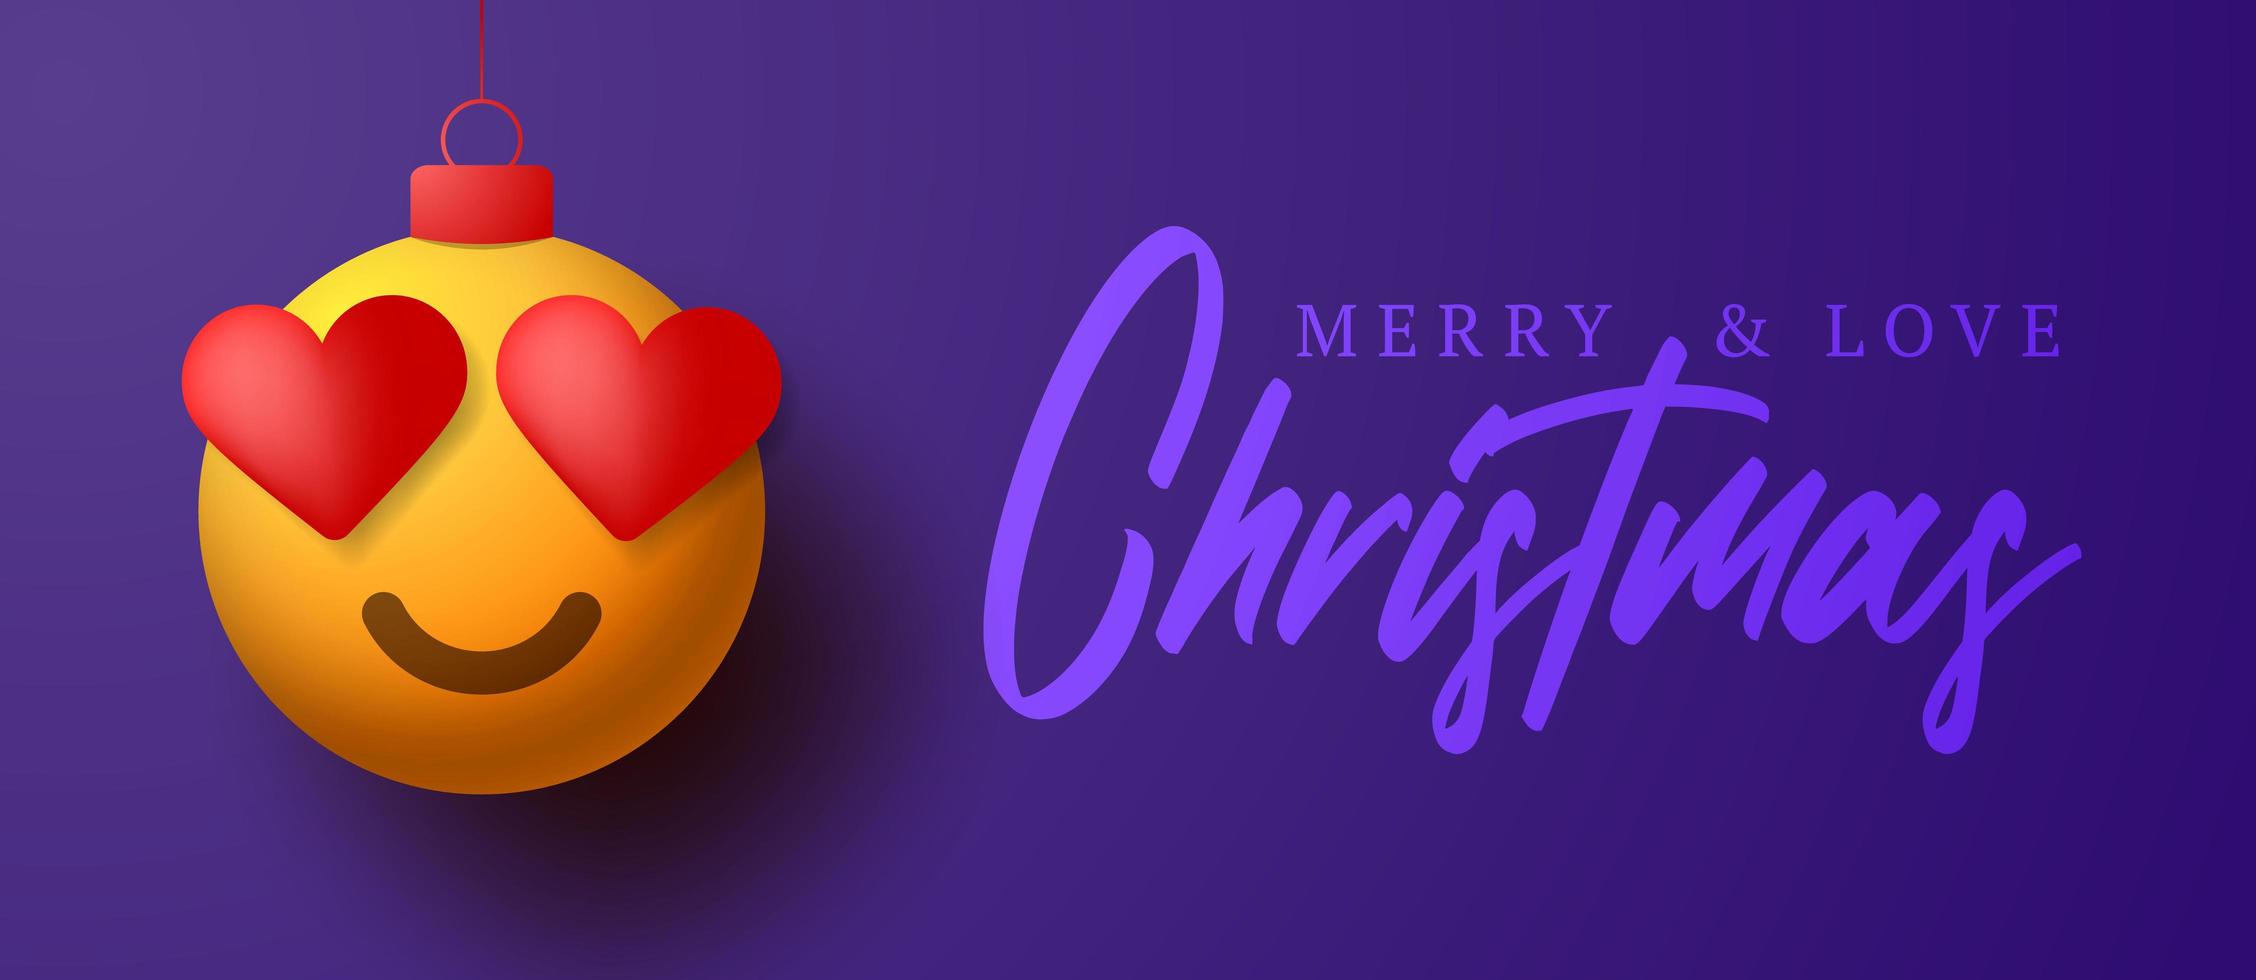 vrolijke kerstkaart met emoji-ornament van het hartoog vector